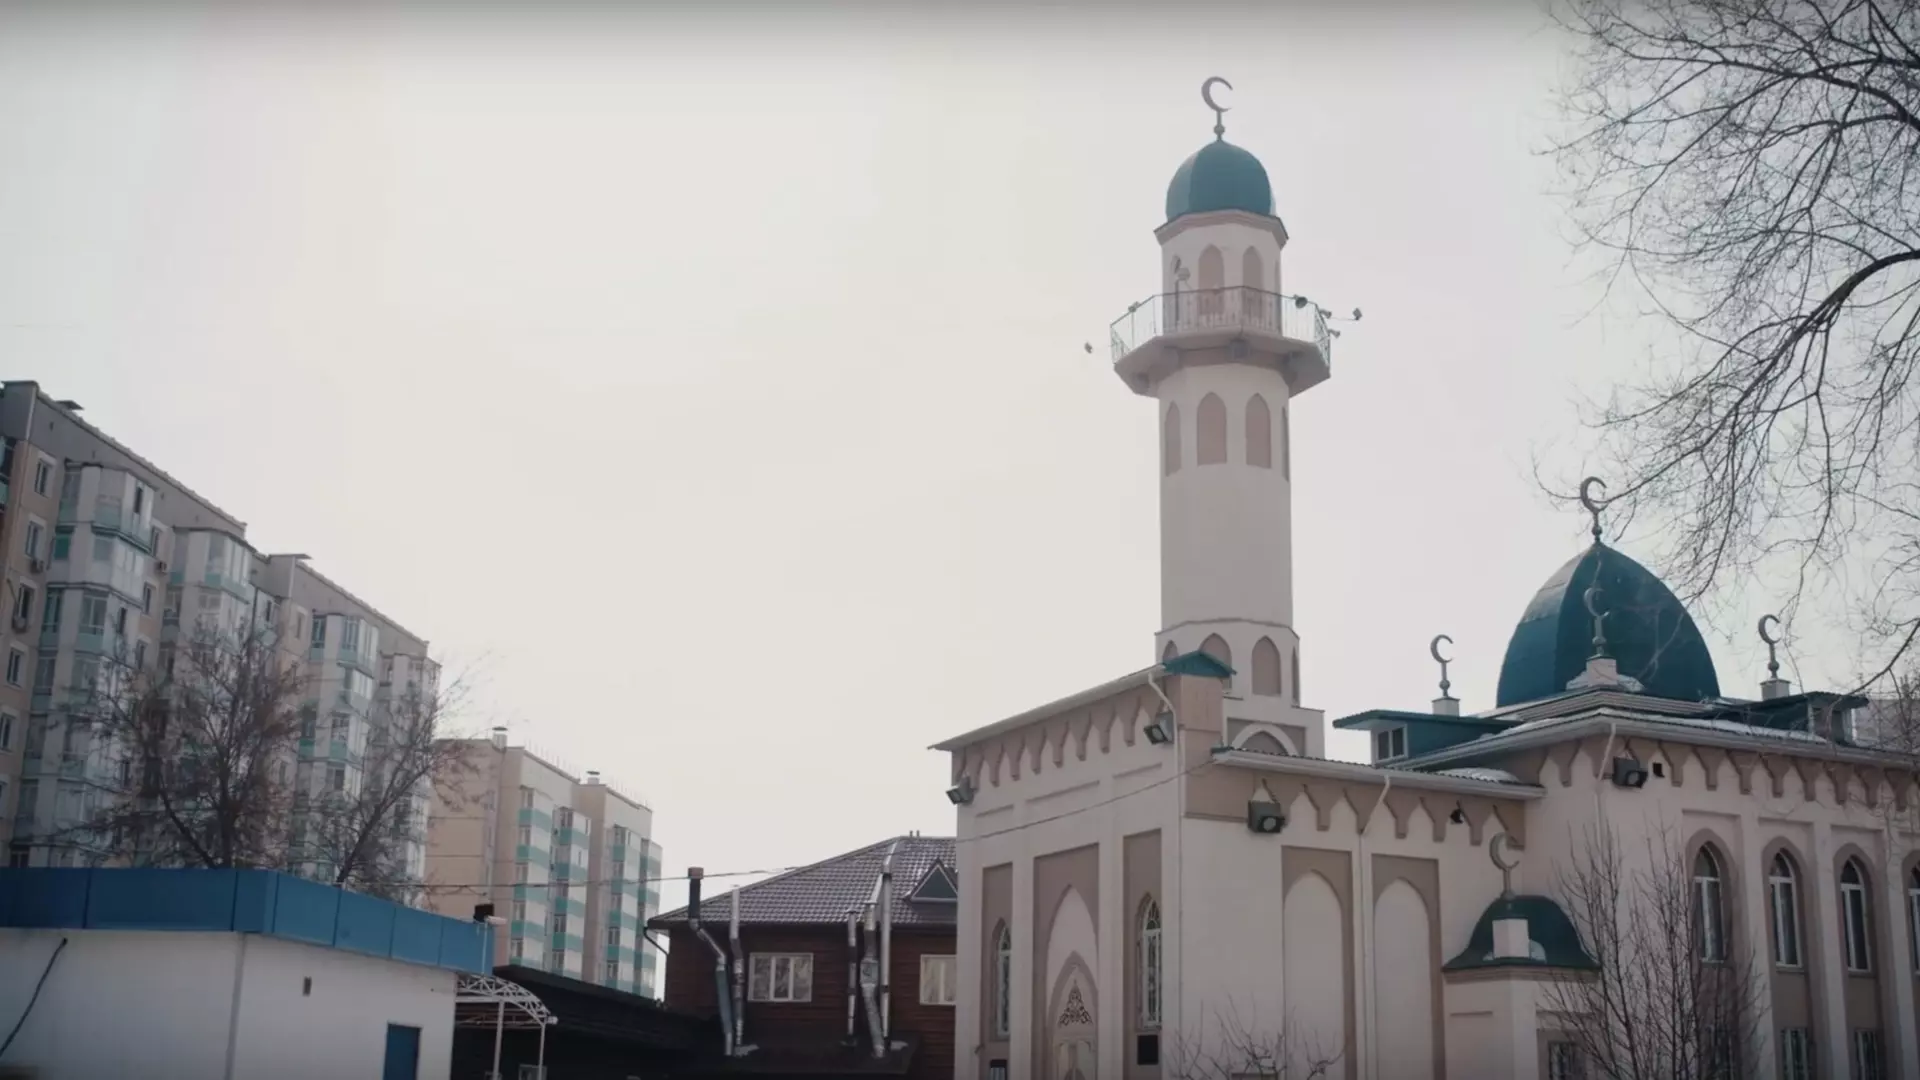 Обращение к Путину с просьбой построить новую мечеть вызвало споры в Красноярске